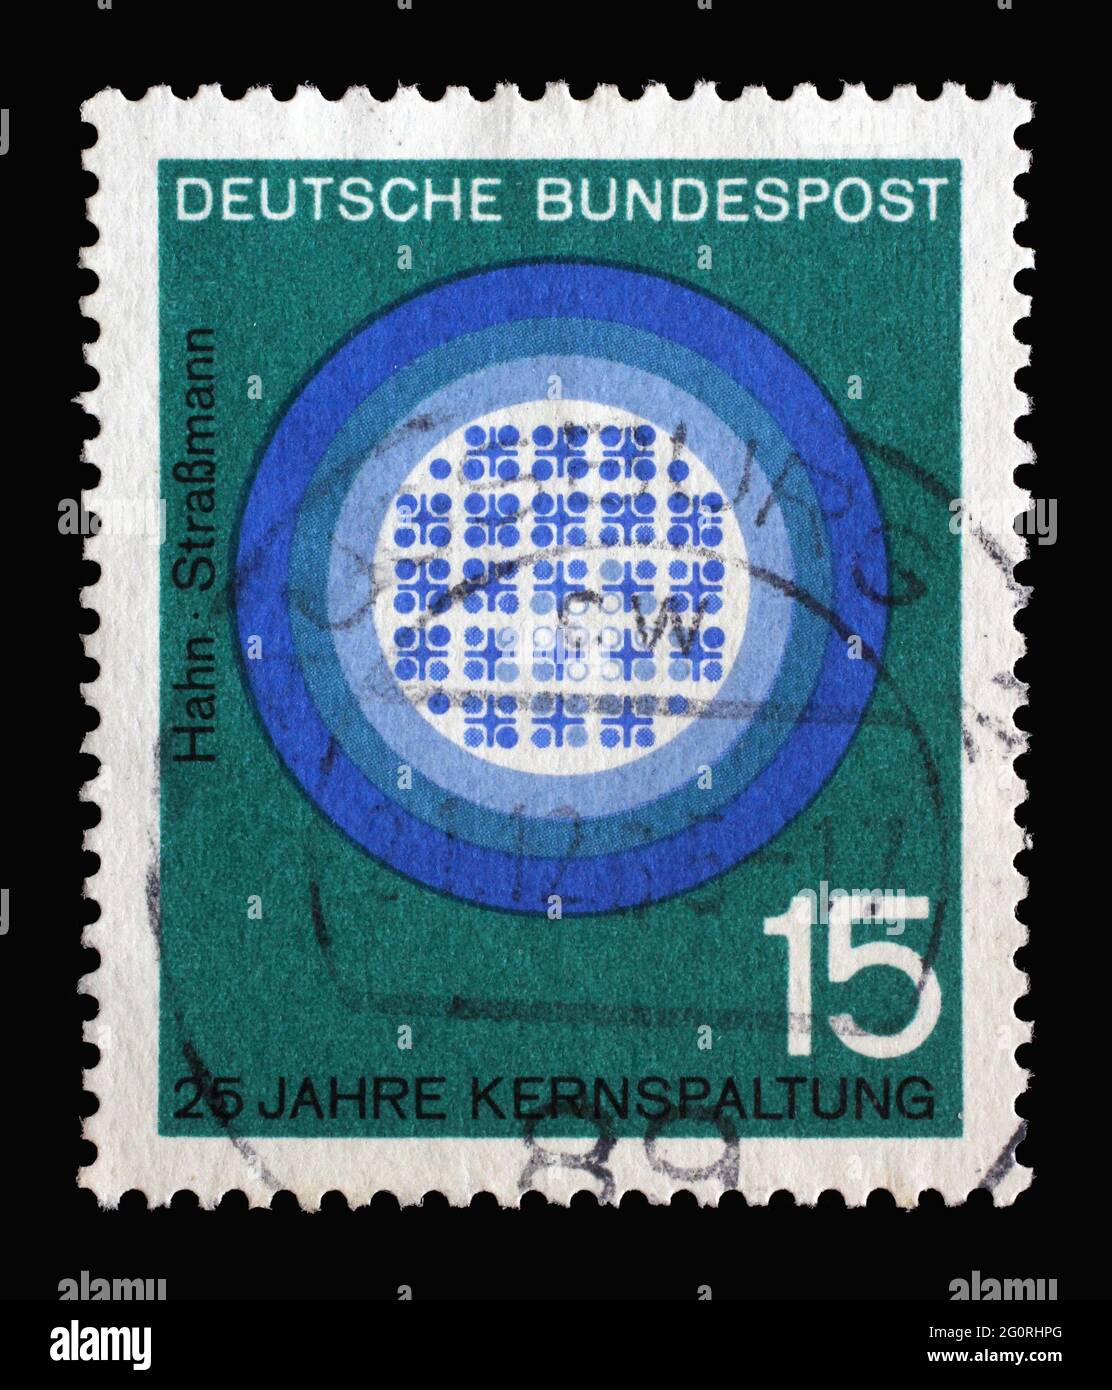 Timbro stampato in Germania con 25° anniversario della pubblicazione del trattato di Hahn-Strassmann sulla separazione del nucleo dell'atomo, circa 1964 Foto Stock